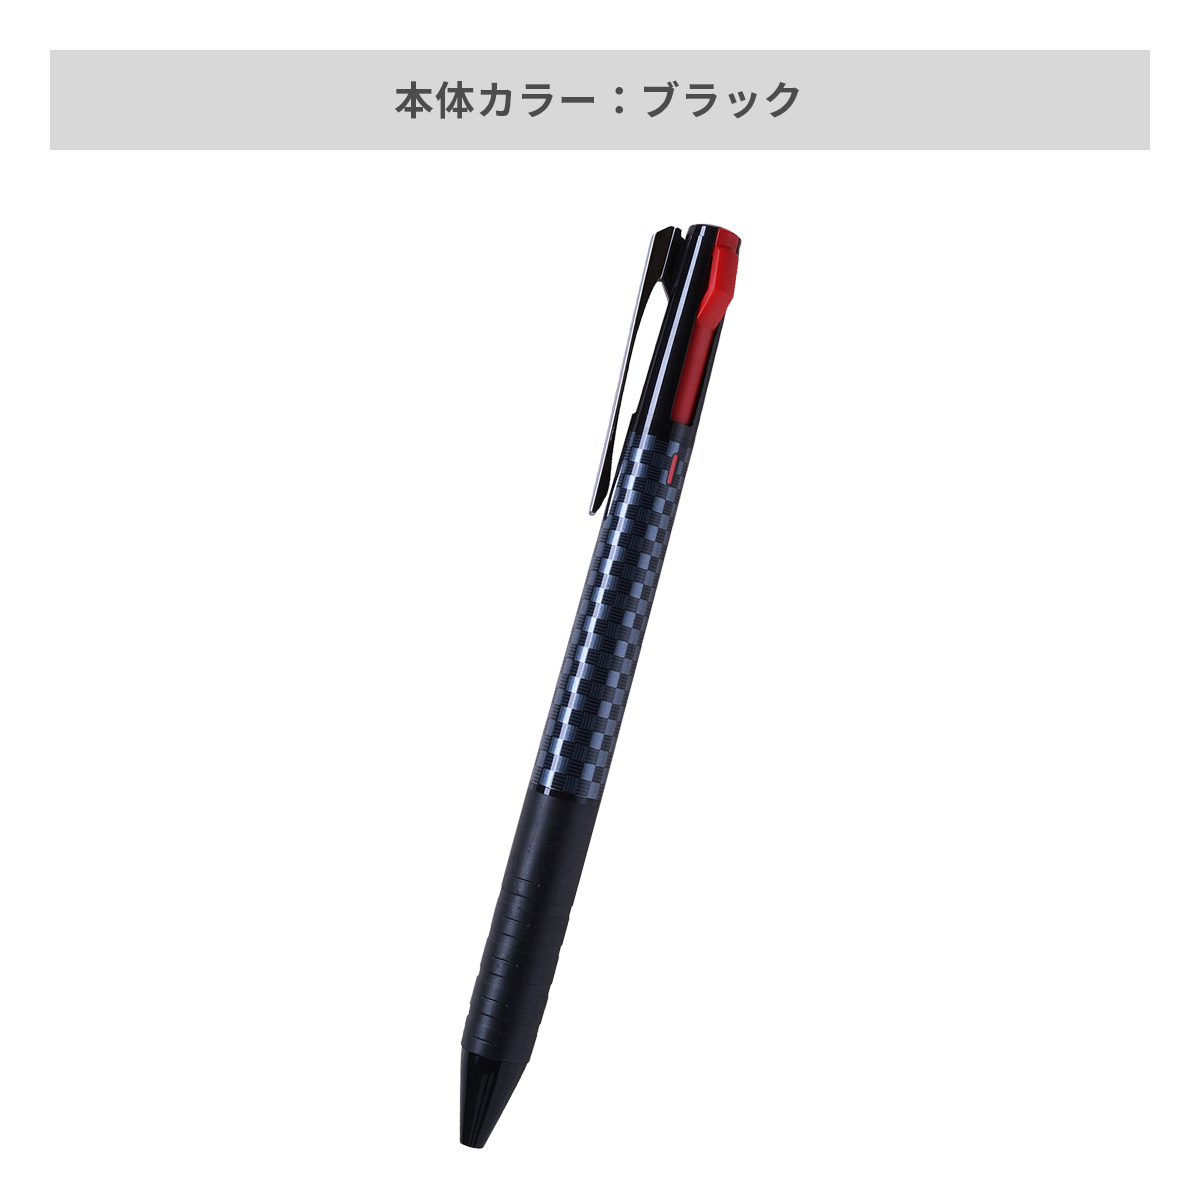 三菱鉛筆 ジェットストリーム スリムコンパクト 3色ボールペン 0.5mm【名入れボールペン / パッド印刷】 画像6